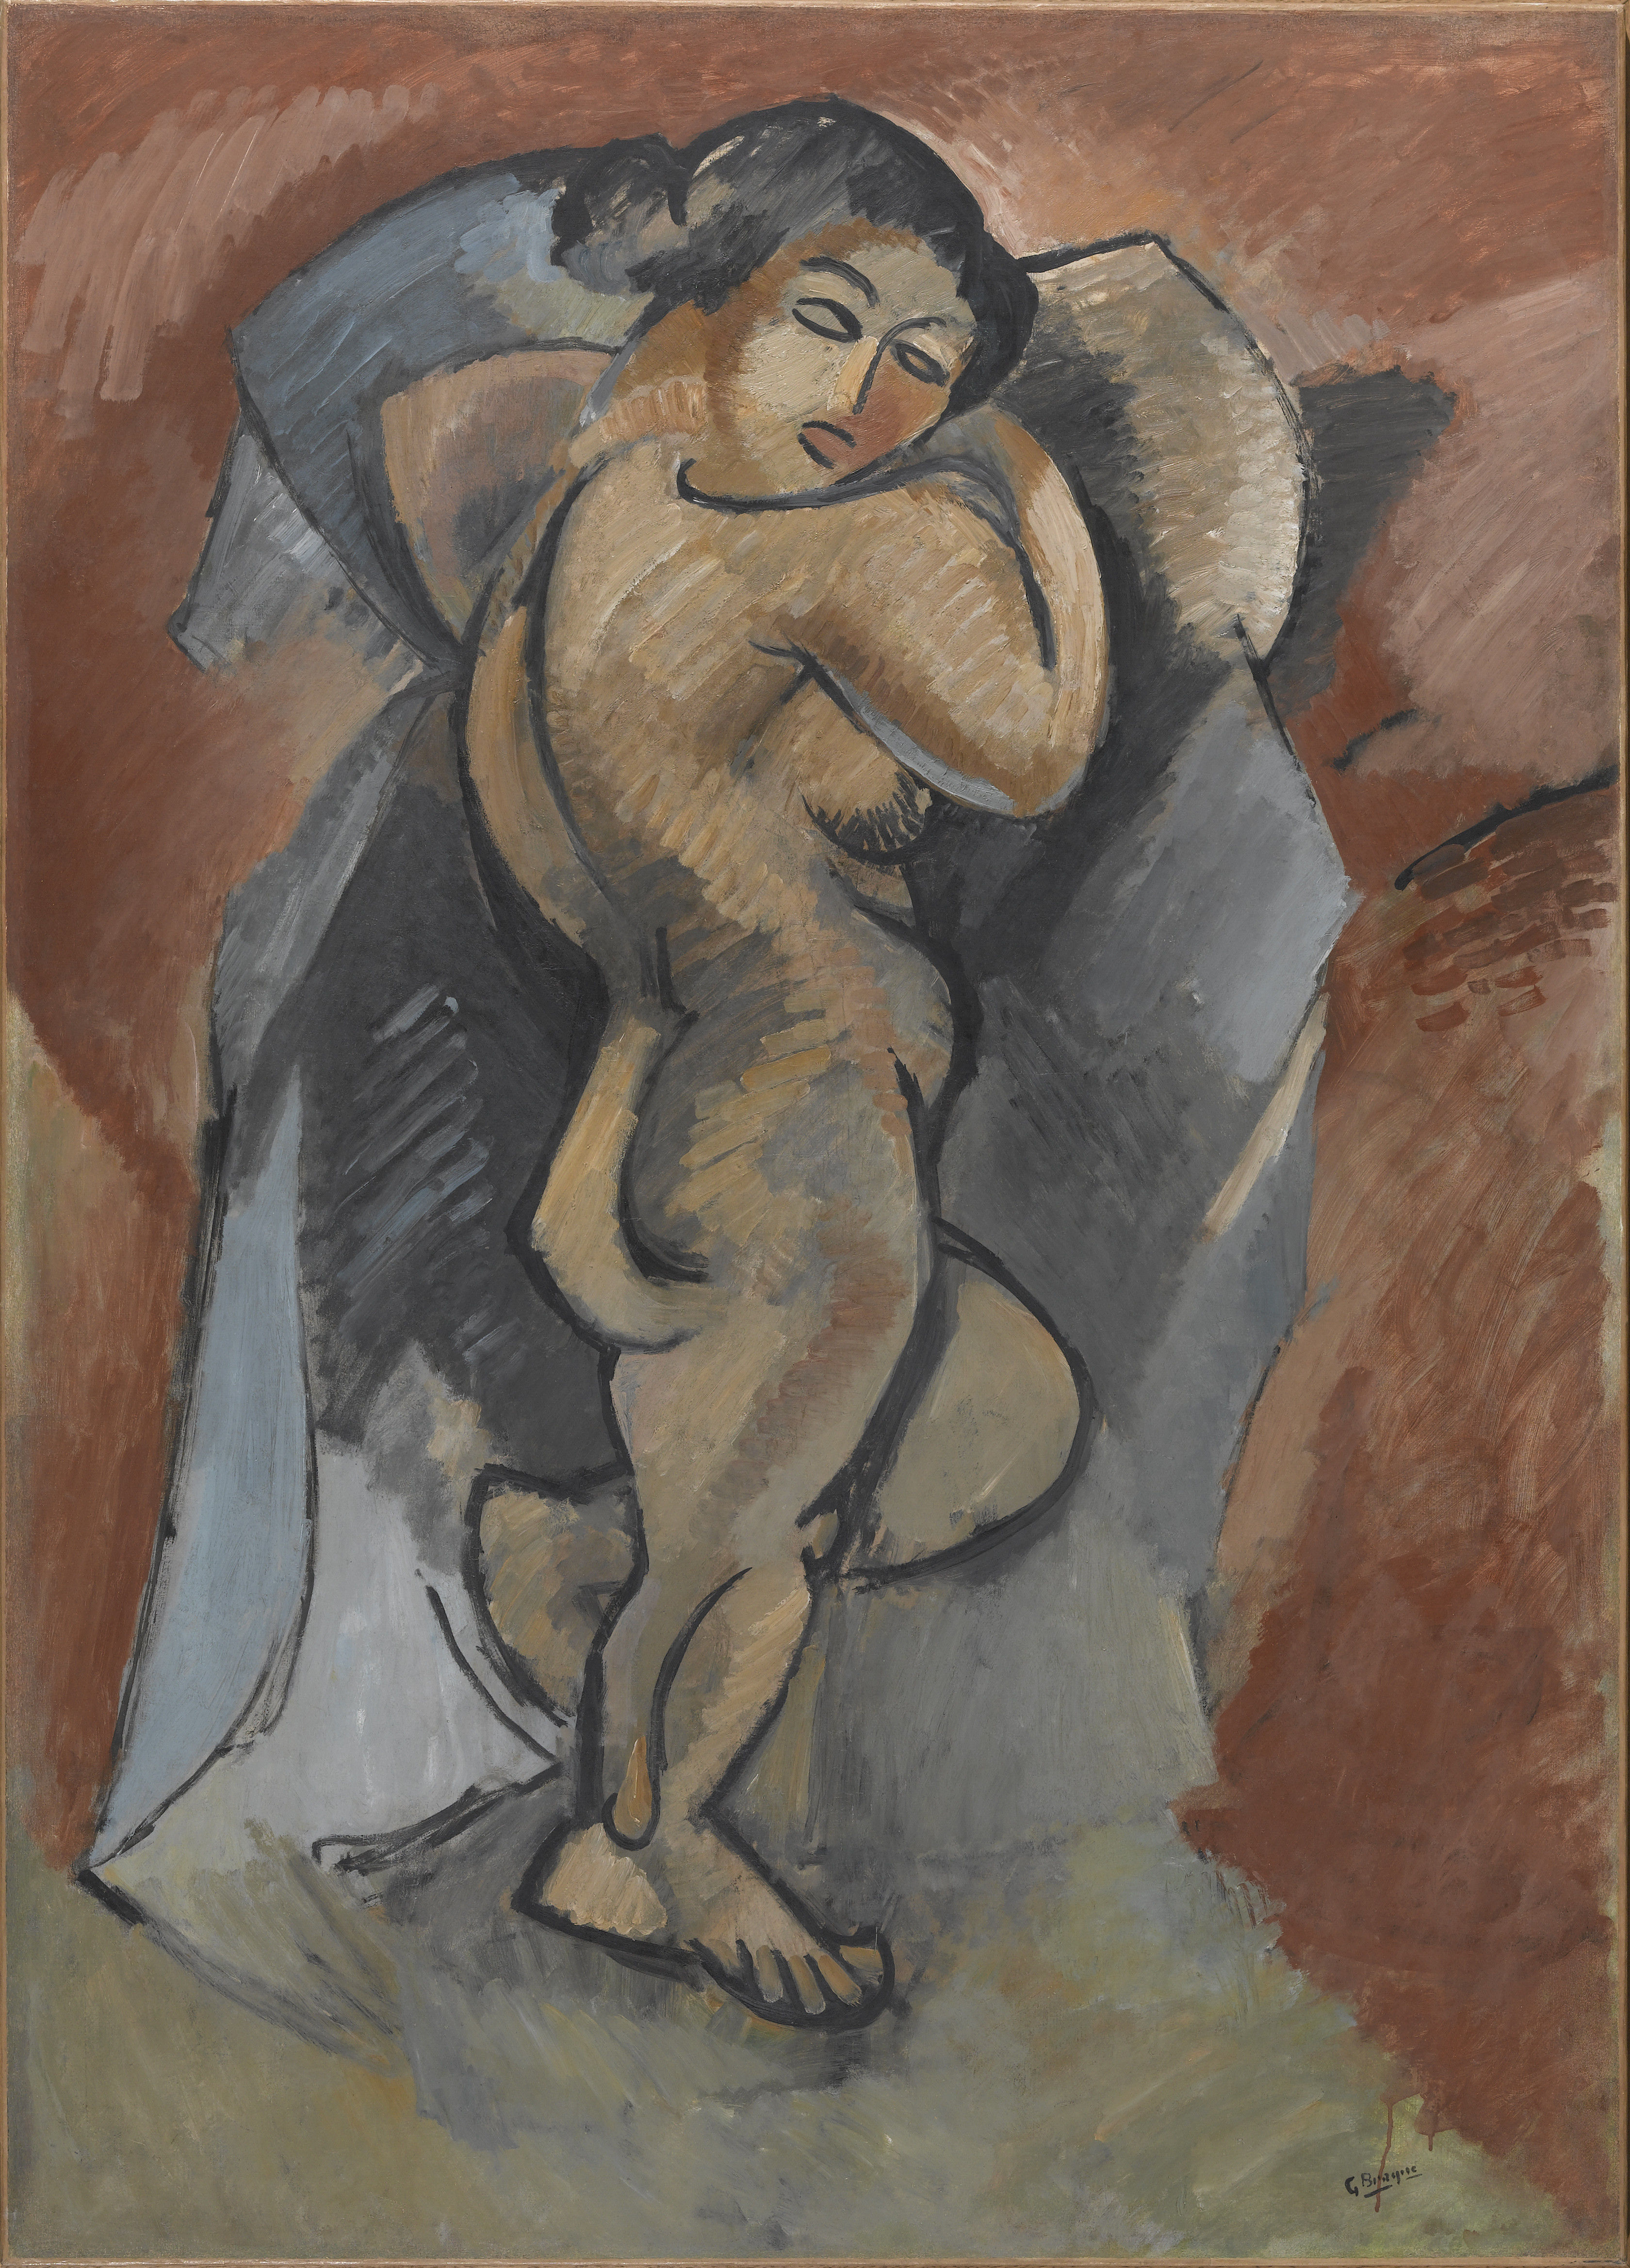 Beispiel des geometrischen Kubismus, Georges Braque Grand Nu, 1907-1908